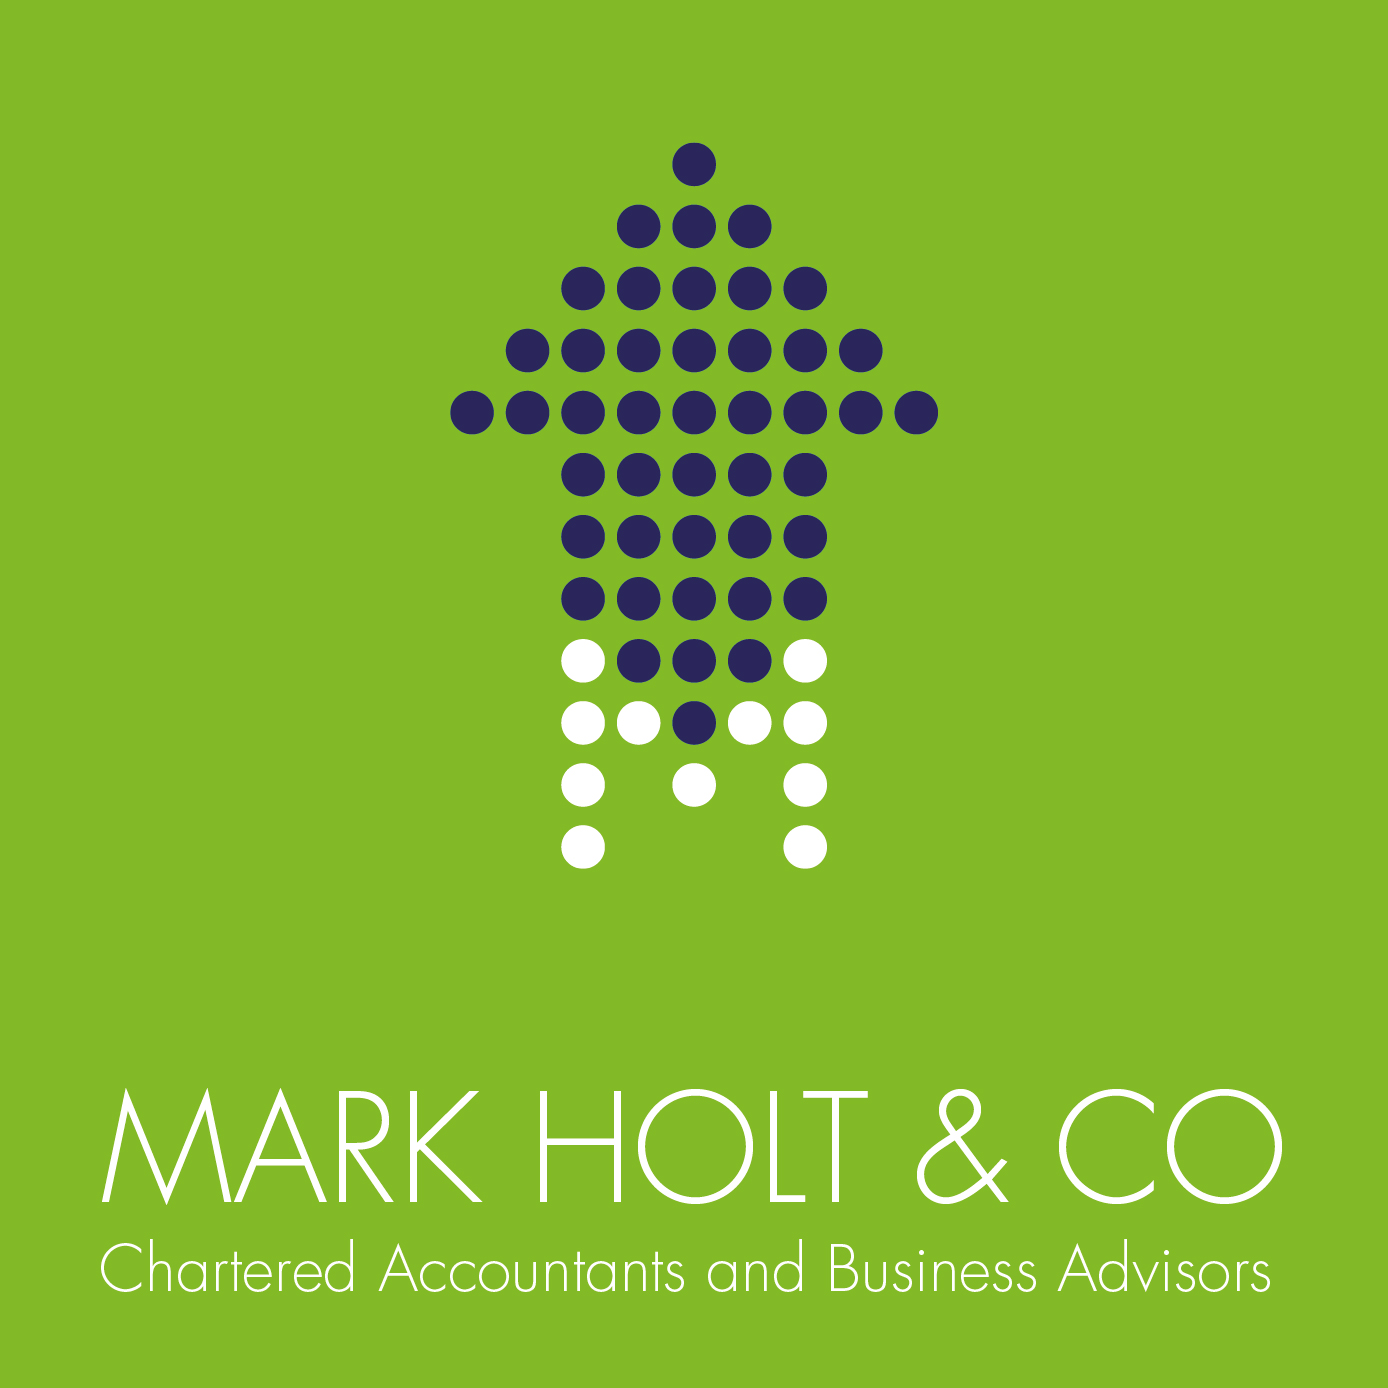 Mark Holt & Co